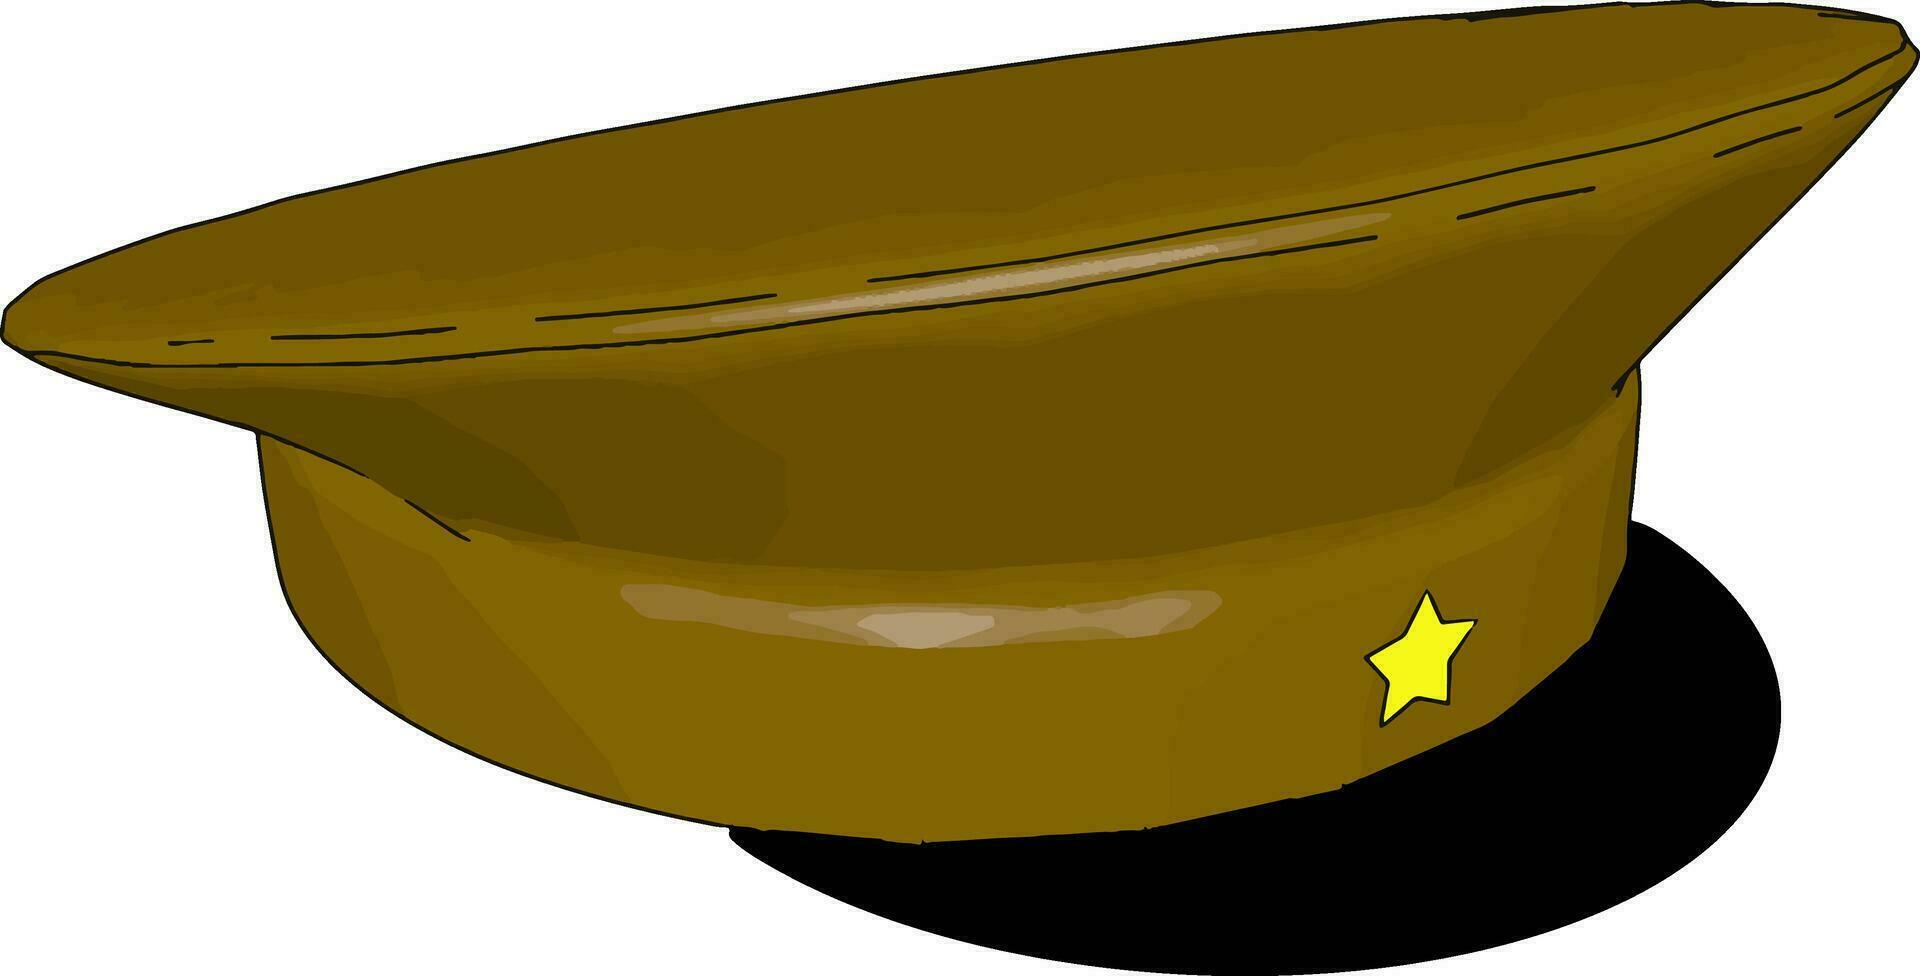 Militärhut, Illustration, Vektor auf weißem Hintergrund.